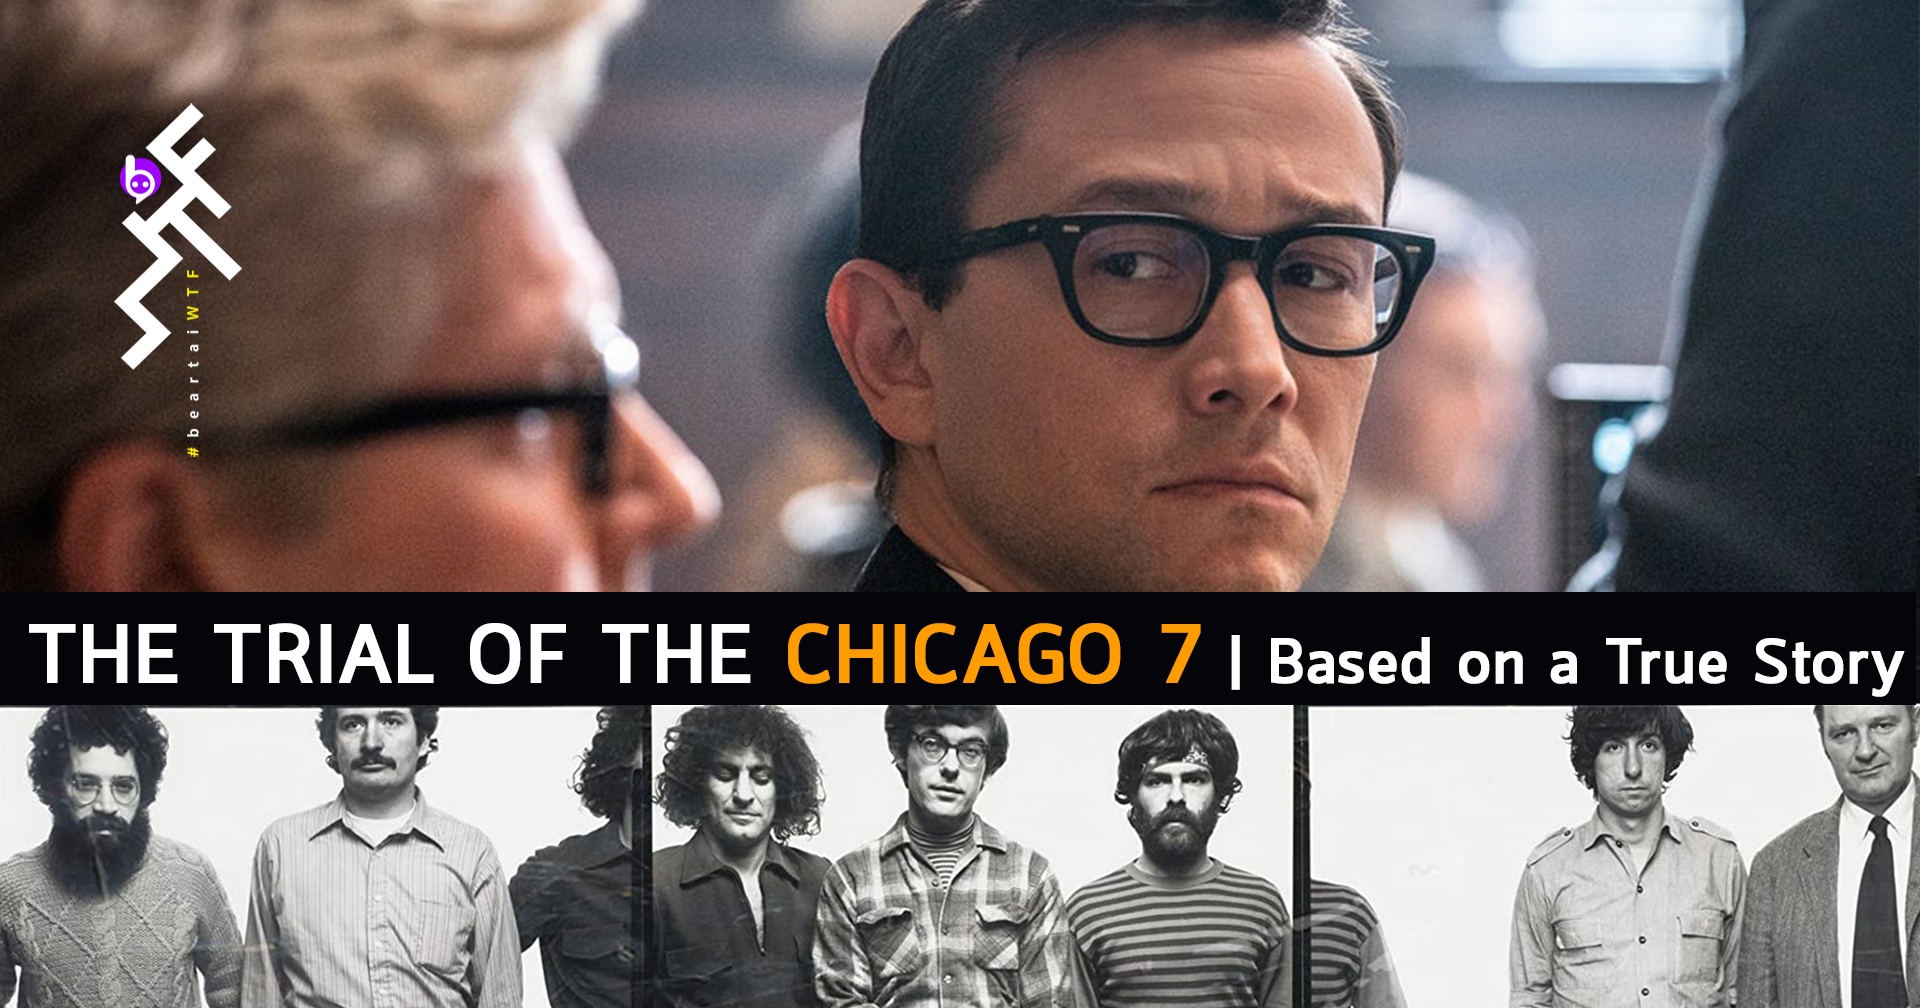 [รีวิว] The Trial of the Chicago 7: หนังศาลคดีชุมนุมทางการเมือง สุดปั่น